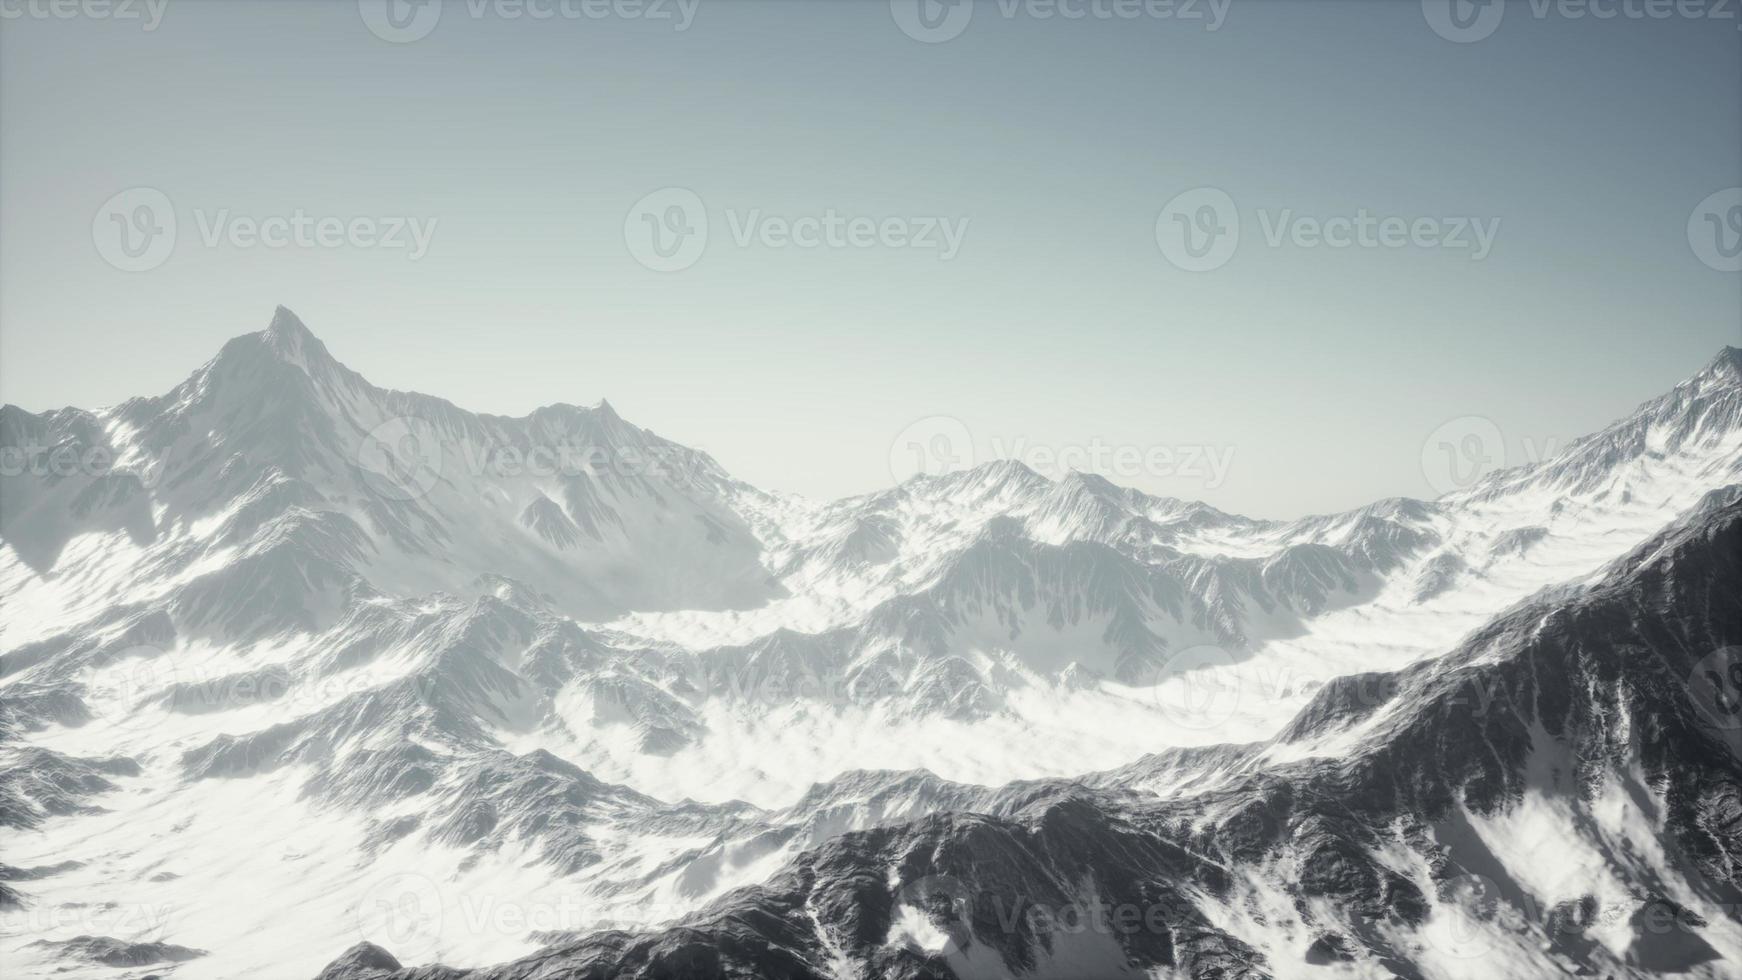 panoramisch uitzicht op de bergen van besneeuwde toppen en gletsjers foto